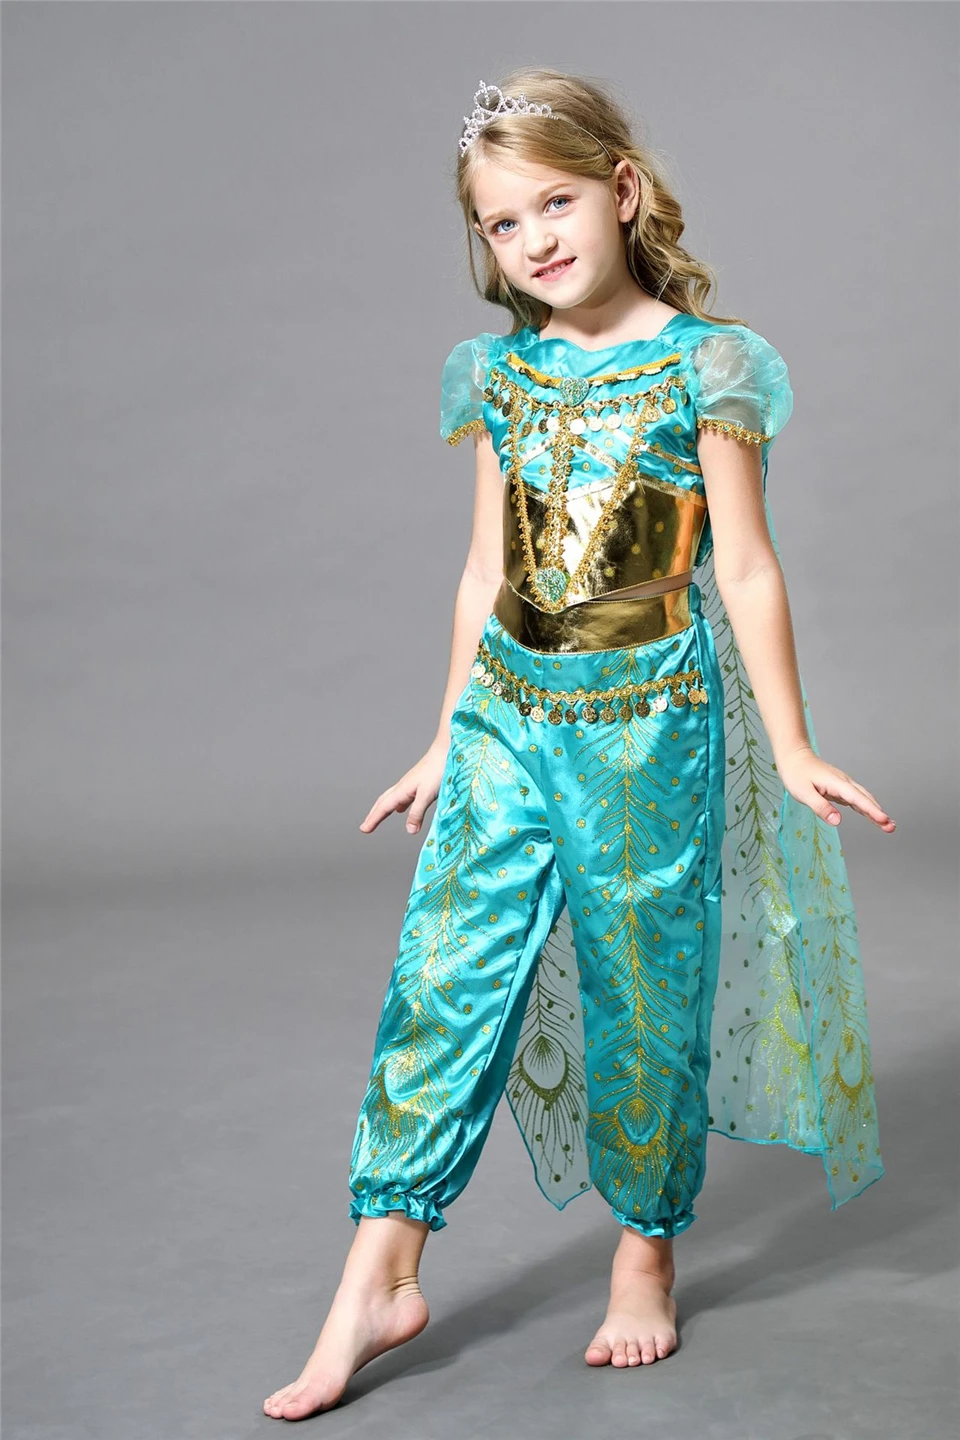 Аравийский элегантное платье принцессы со шнуровкой и зеленого цветов для девочек, с рисунком "Аладдин" на Рождество и Хеллоуин; костюм Жасмин дети косплей маскарад Вечерние